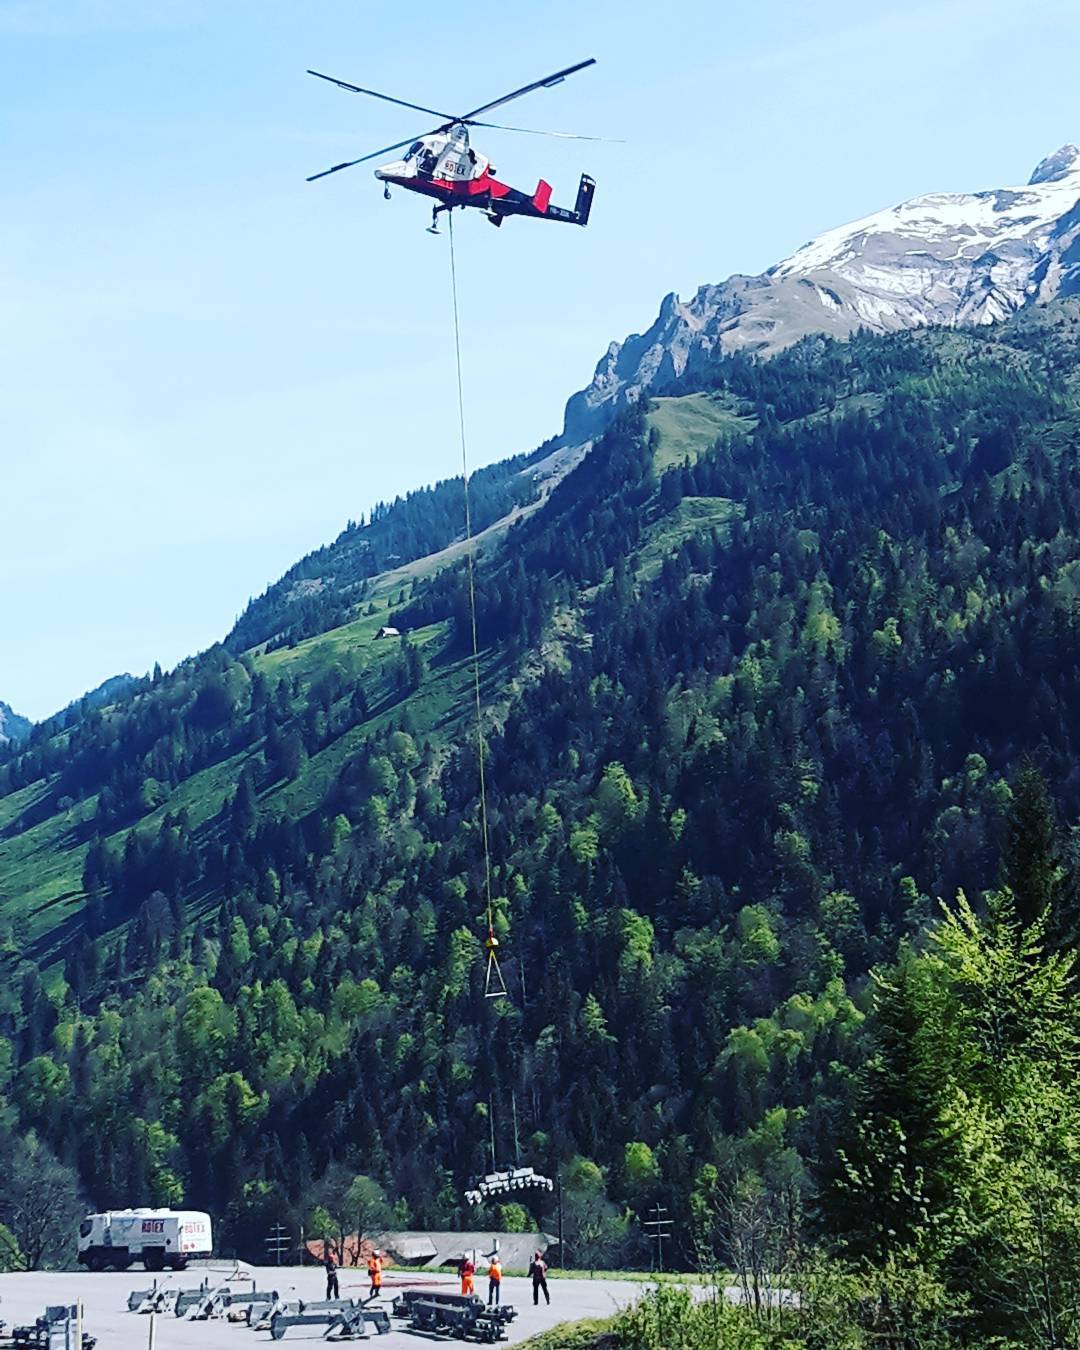 Die Vorbereitungen auf die Sommersaison 2017 laufen auf Hochtouren ☺. Dieses Jahr werden zum ersten Mal Teile der Rollenbatterien der Gondelbahn Stöckalp - Melchsee-Frutt (Jahrgang 2012) zerlegt.
#summer #revision #gondola #helicopters #stöckalp  #melchseefrutt